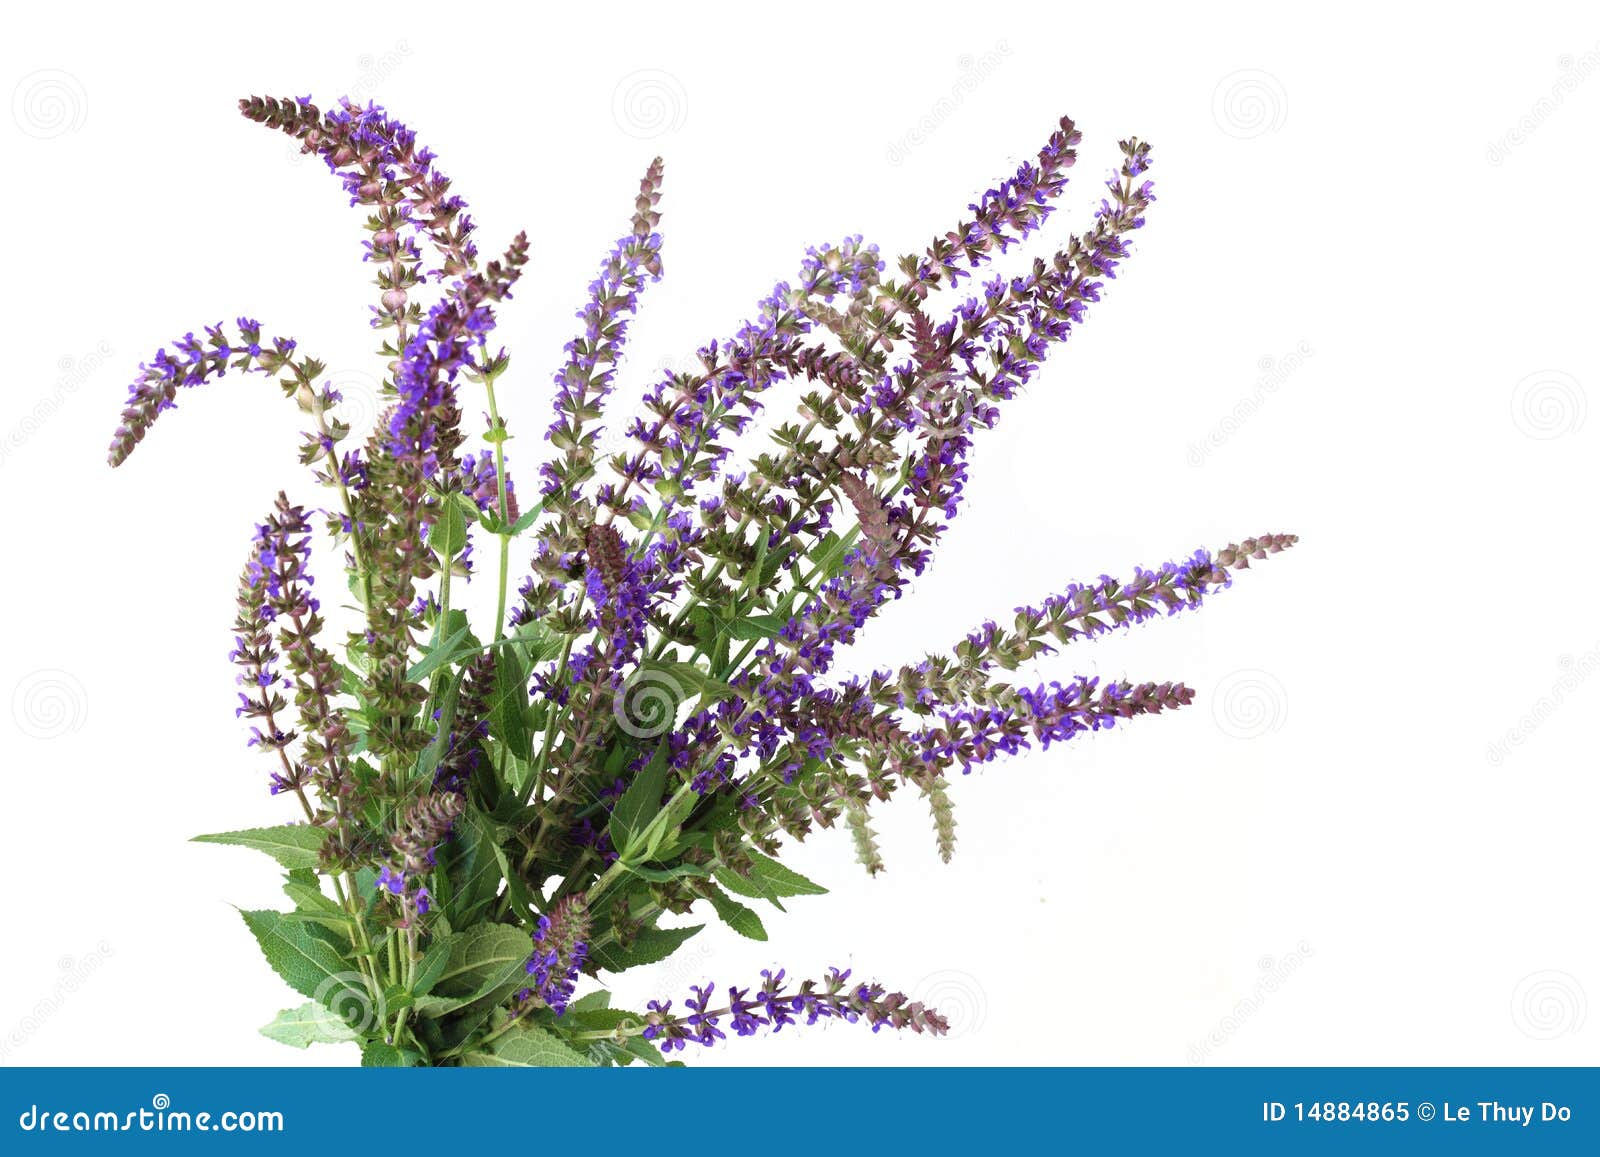 purple meadow sage flower